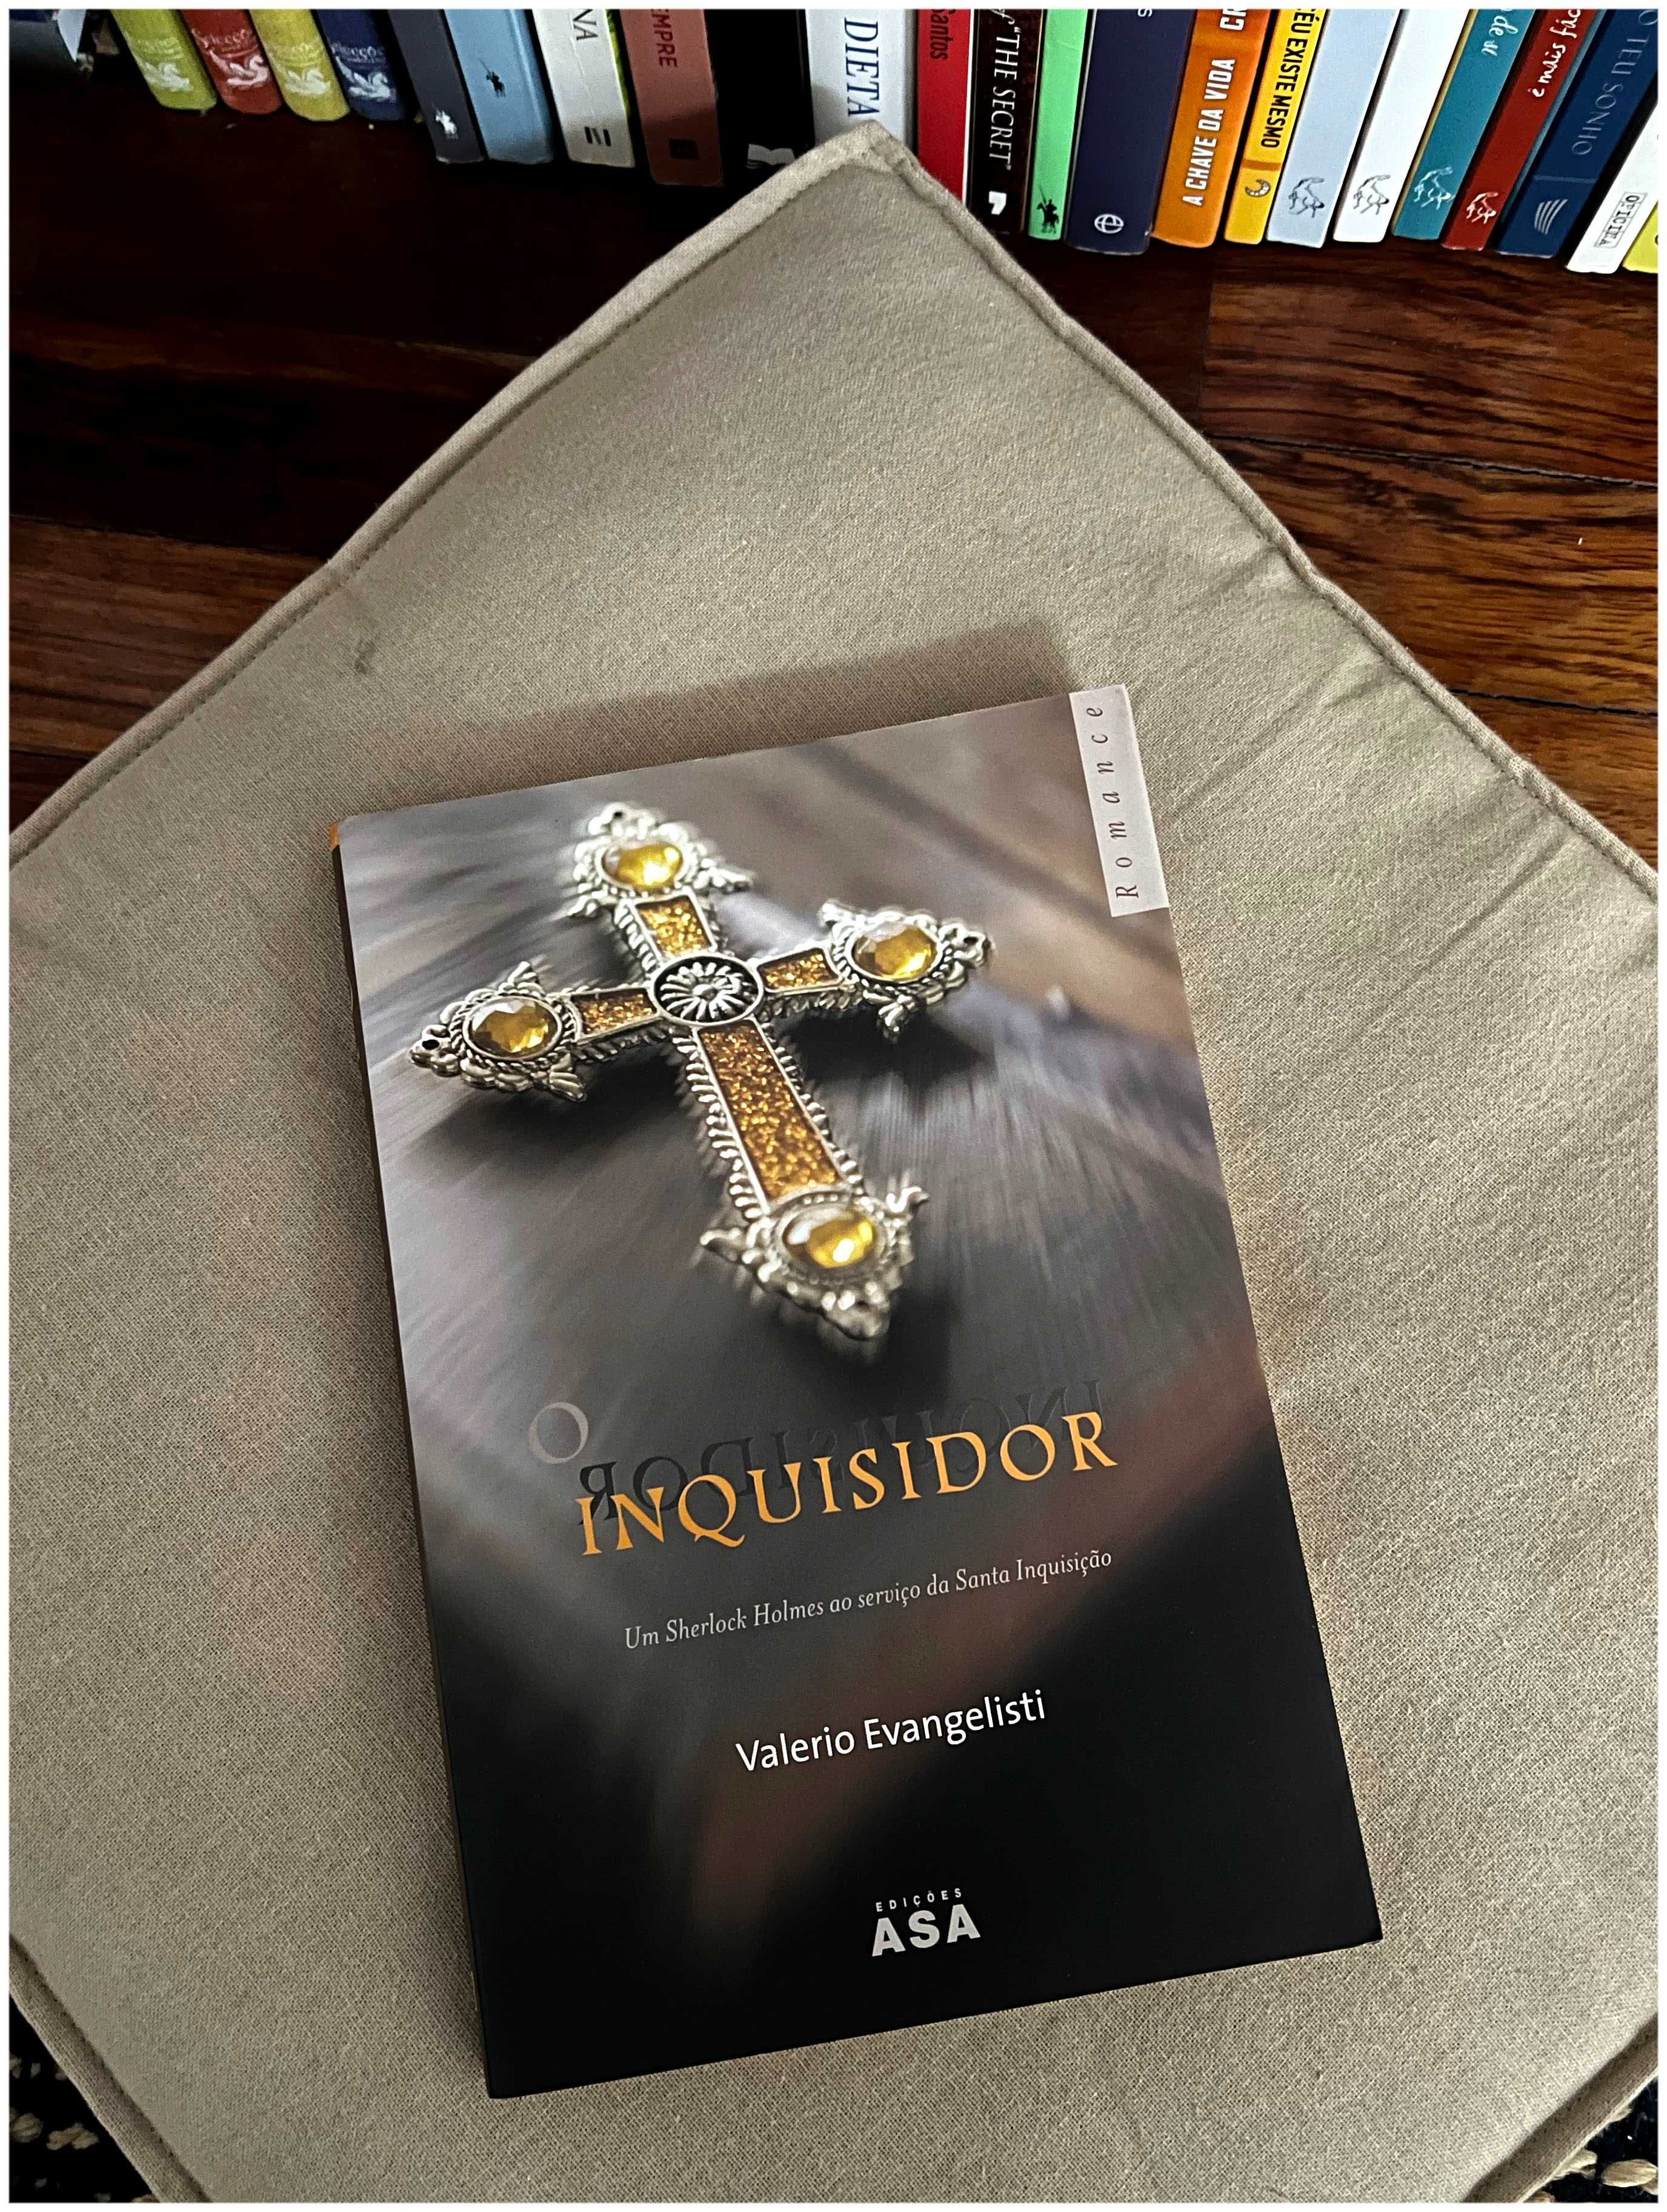 O Inquisidor - Valerio Evangelist